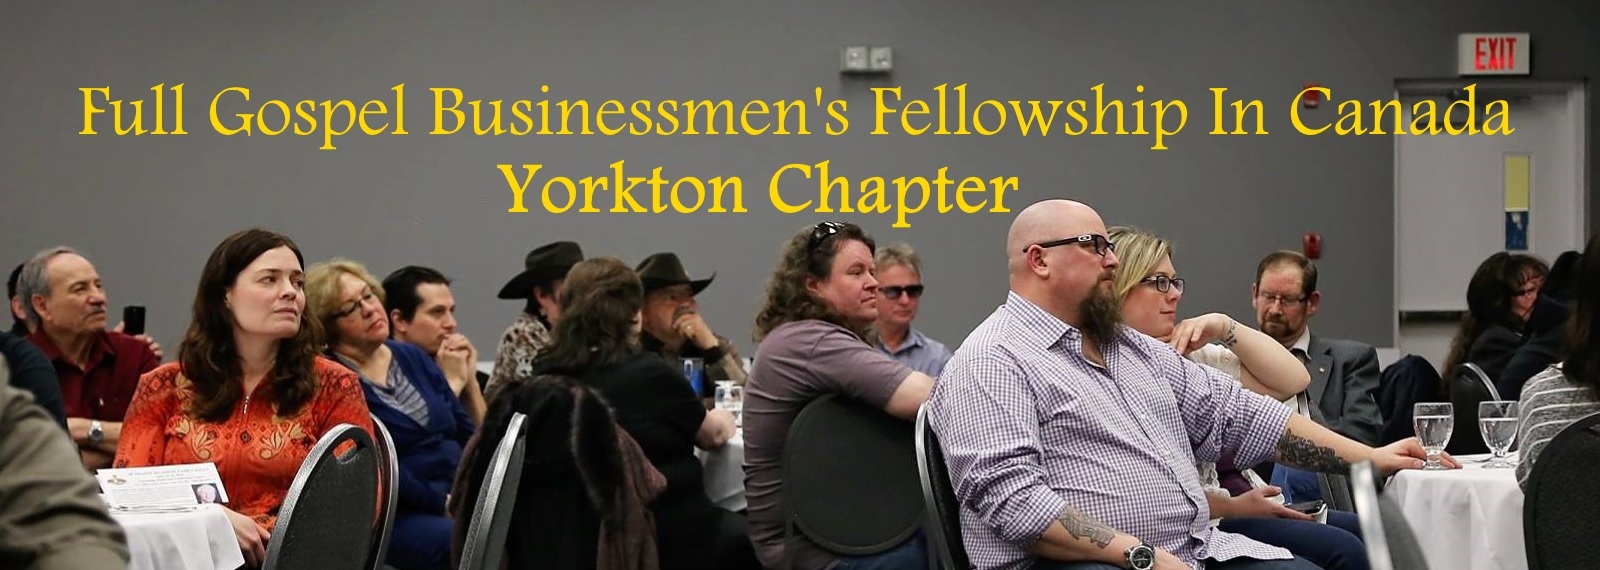 Yorkton Chapter - Full Gospel Businessmen's Fellowship in Canada